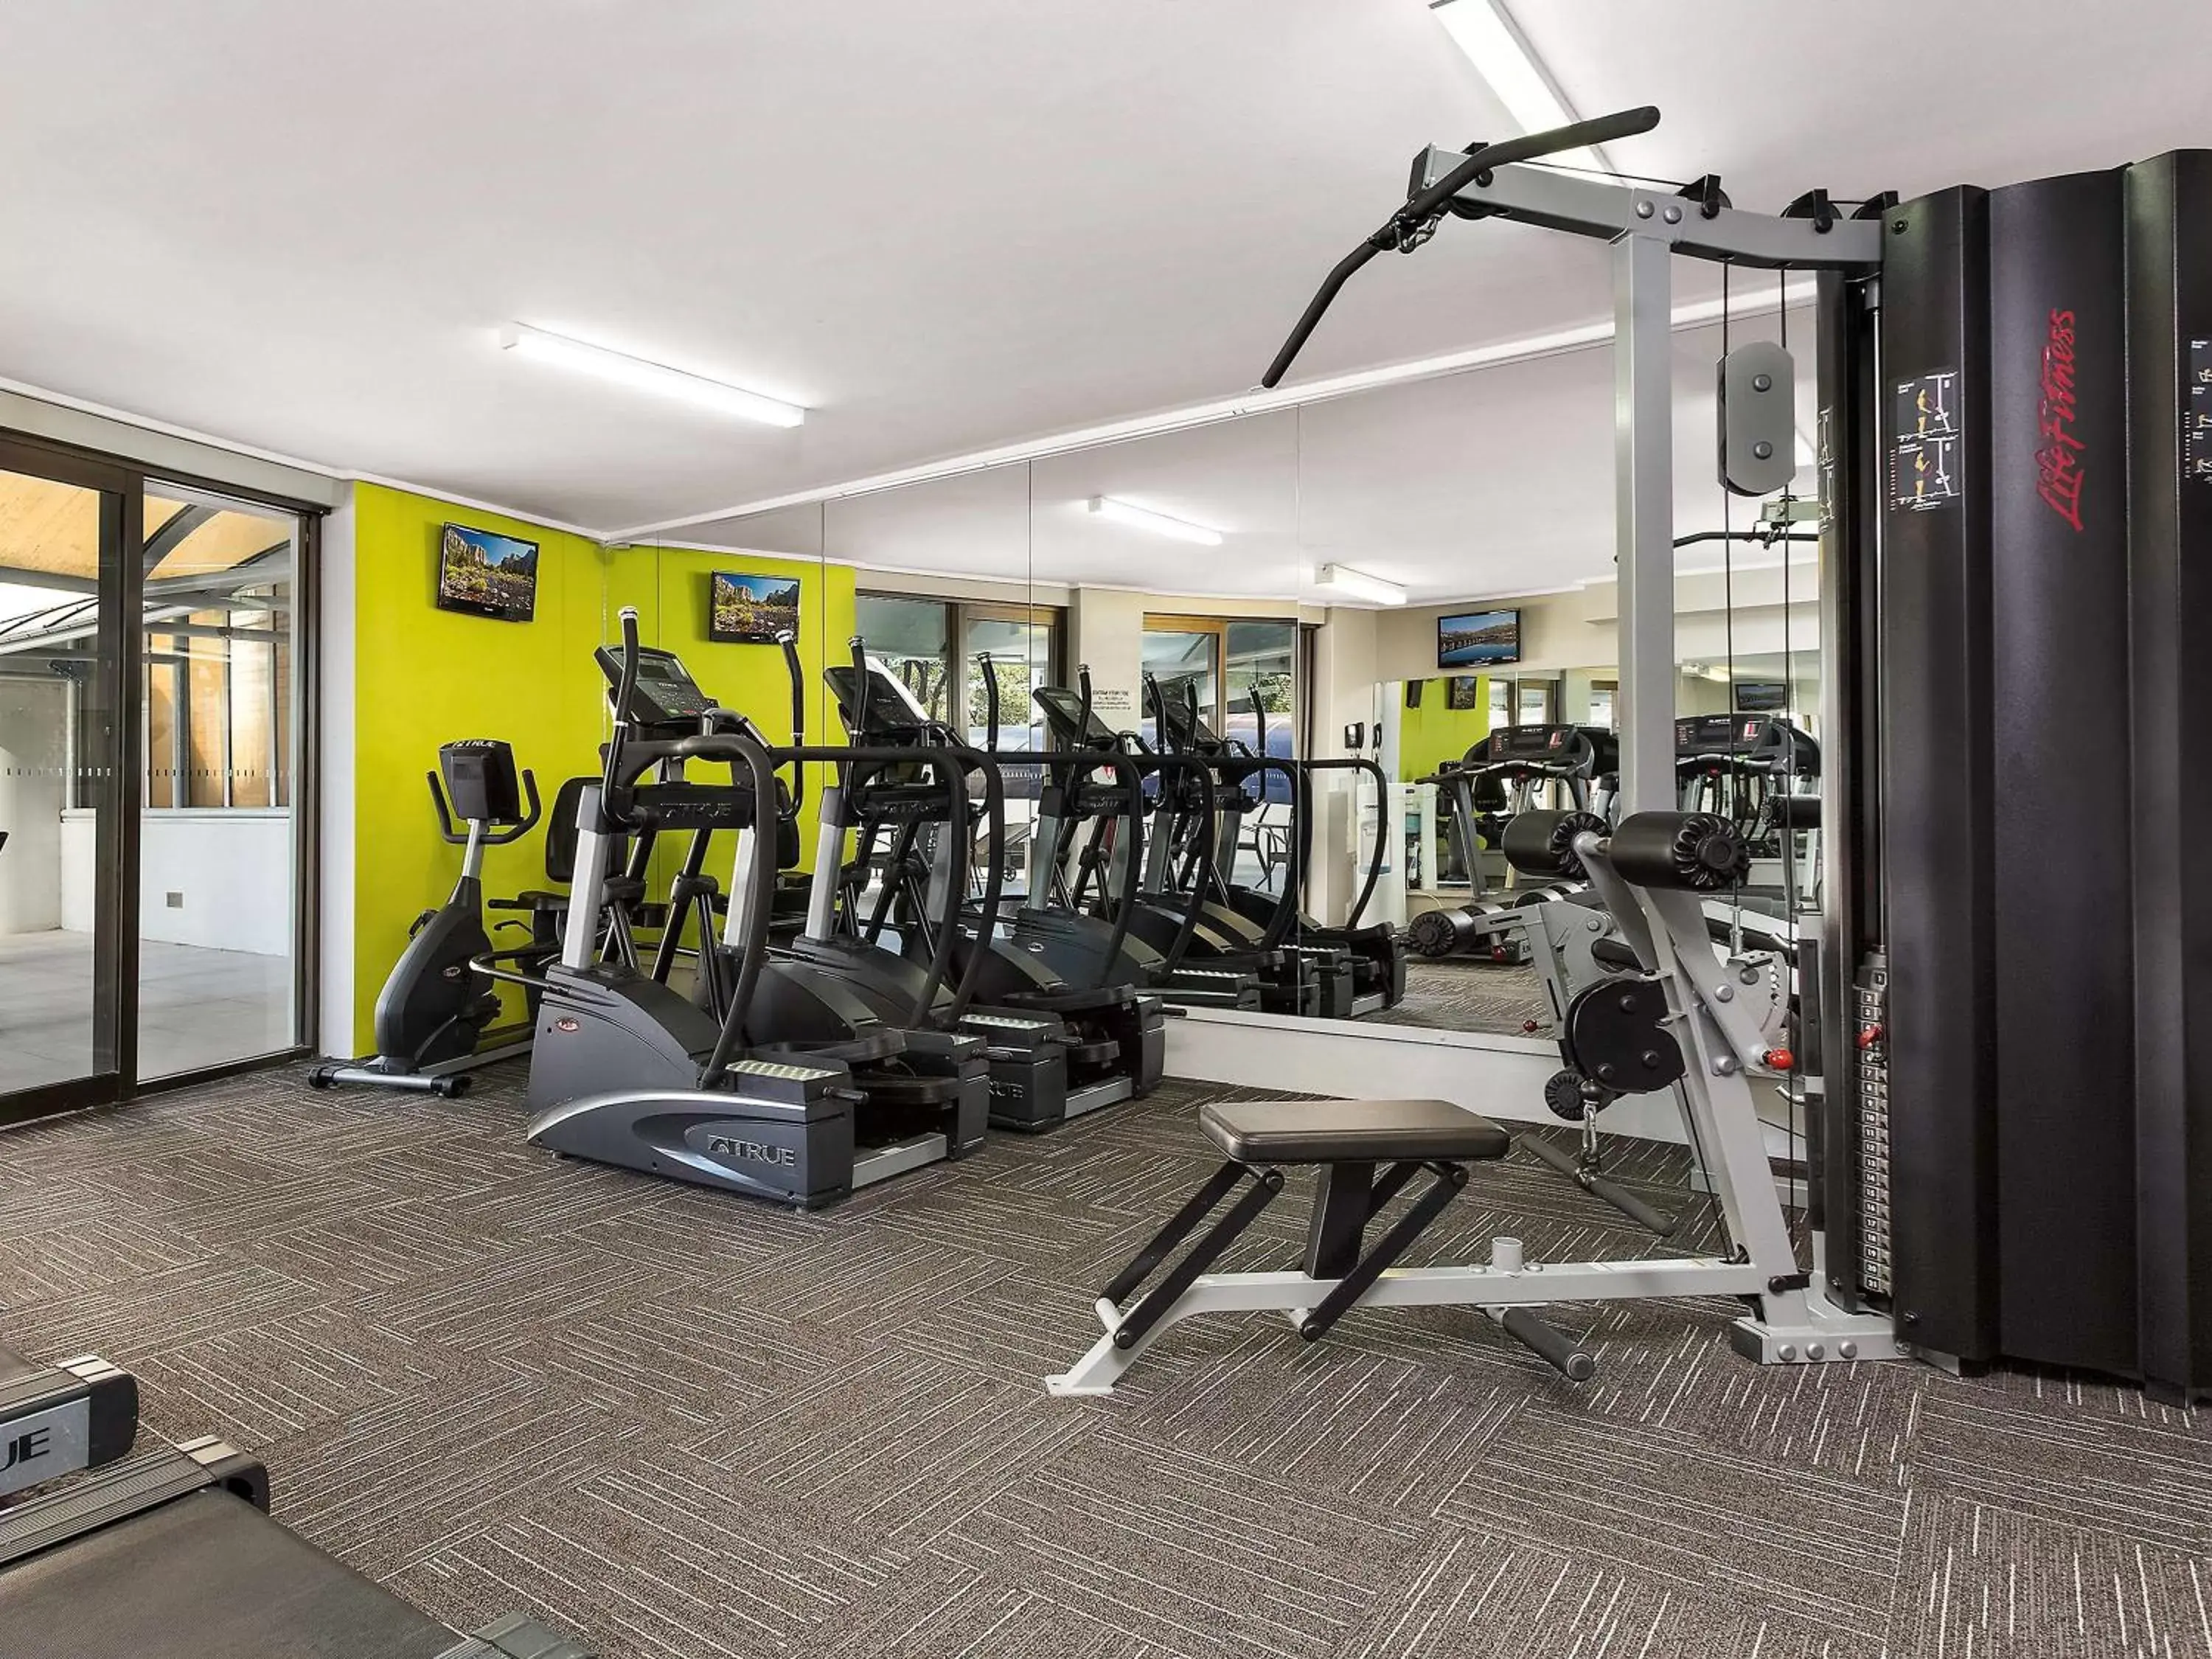 Fitness centre/facilities, Fitness Center/Facilities in Novotel Sydney Parramatta